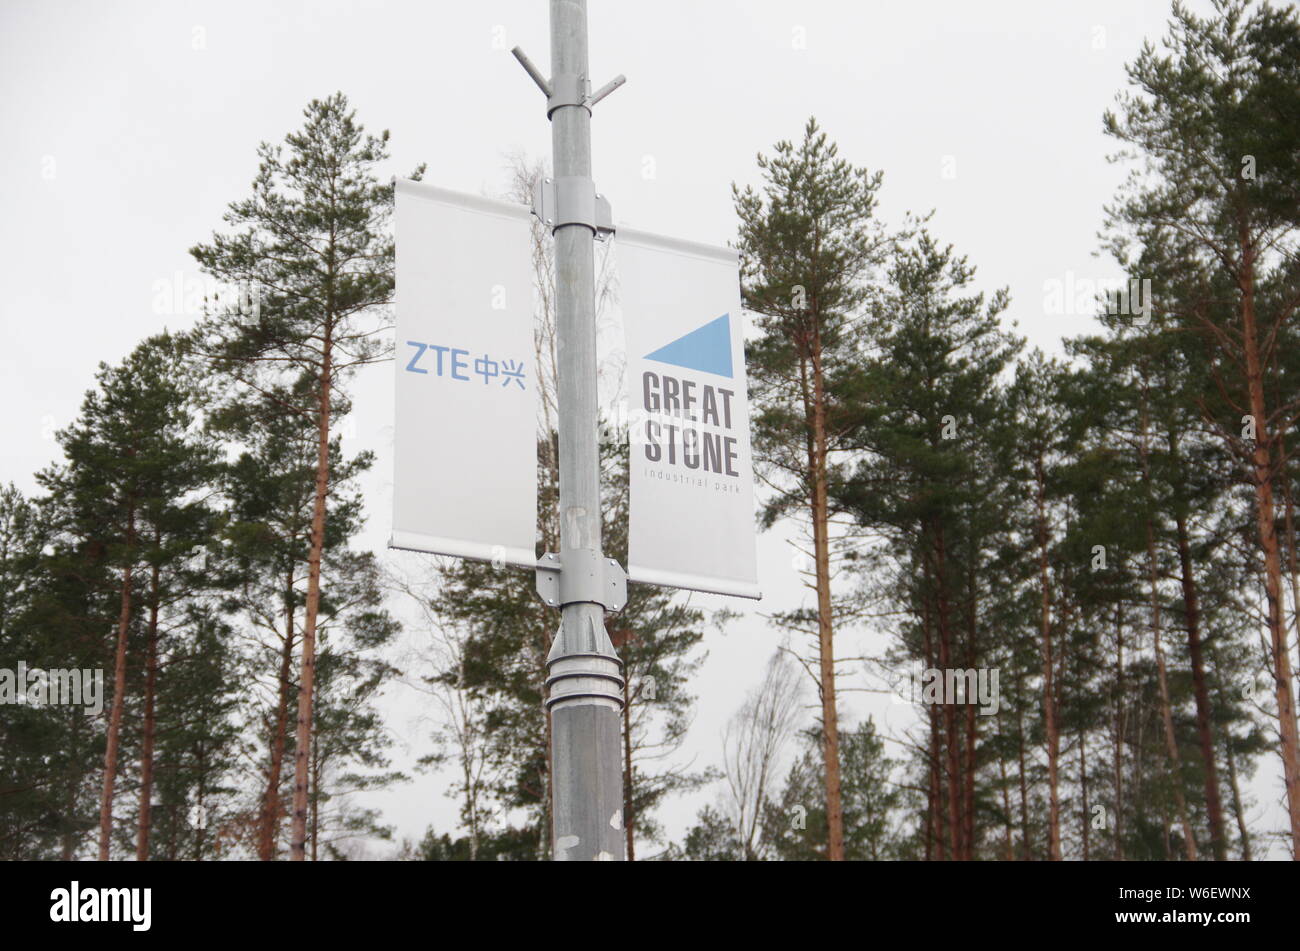 --FILE--Vue d'une publicité de ZTE sur un lampadaire en Biélorussie, 10 décembre 2016. Société de télécommunications chinois ZTE enregistre un pupitre Banque D'Images